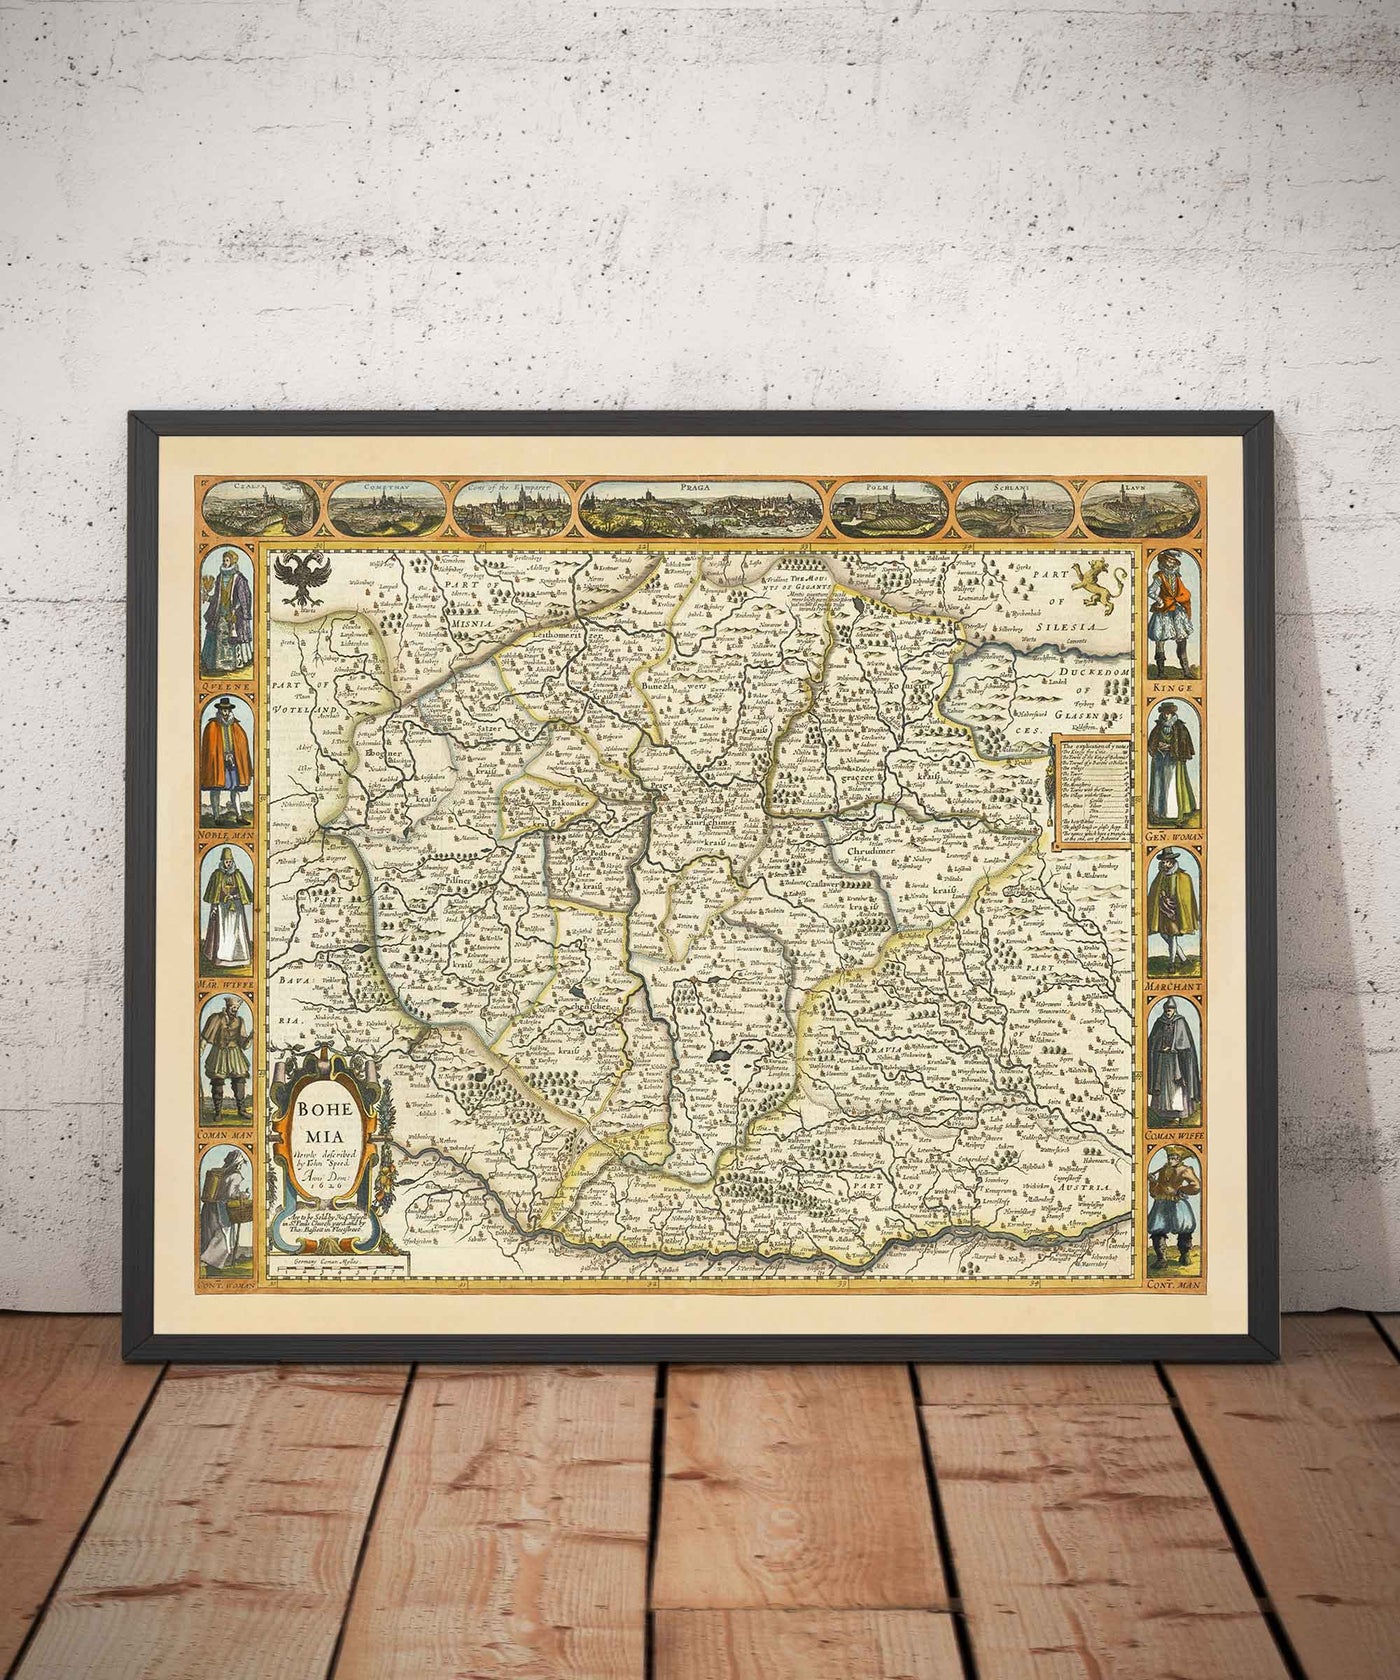 Alte Karte von Böhmen im Jahr 1626 von John Speed - Tschechien, Prag, Bayern, Mähren, Mitteleuropa